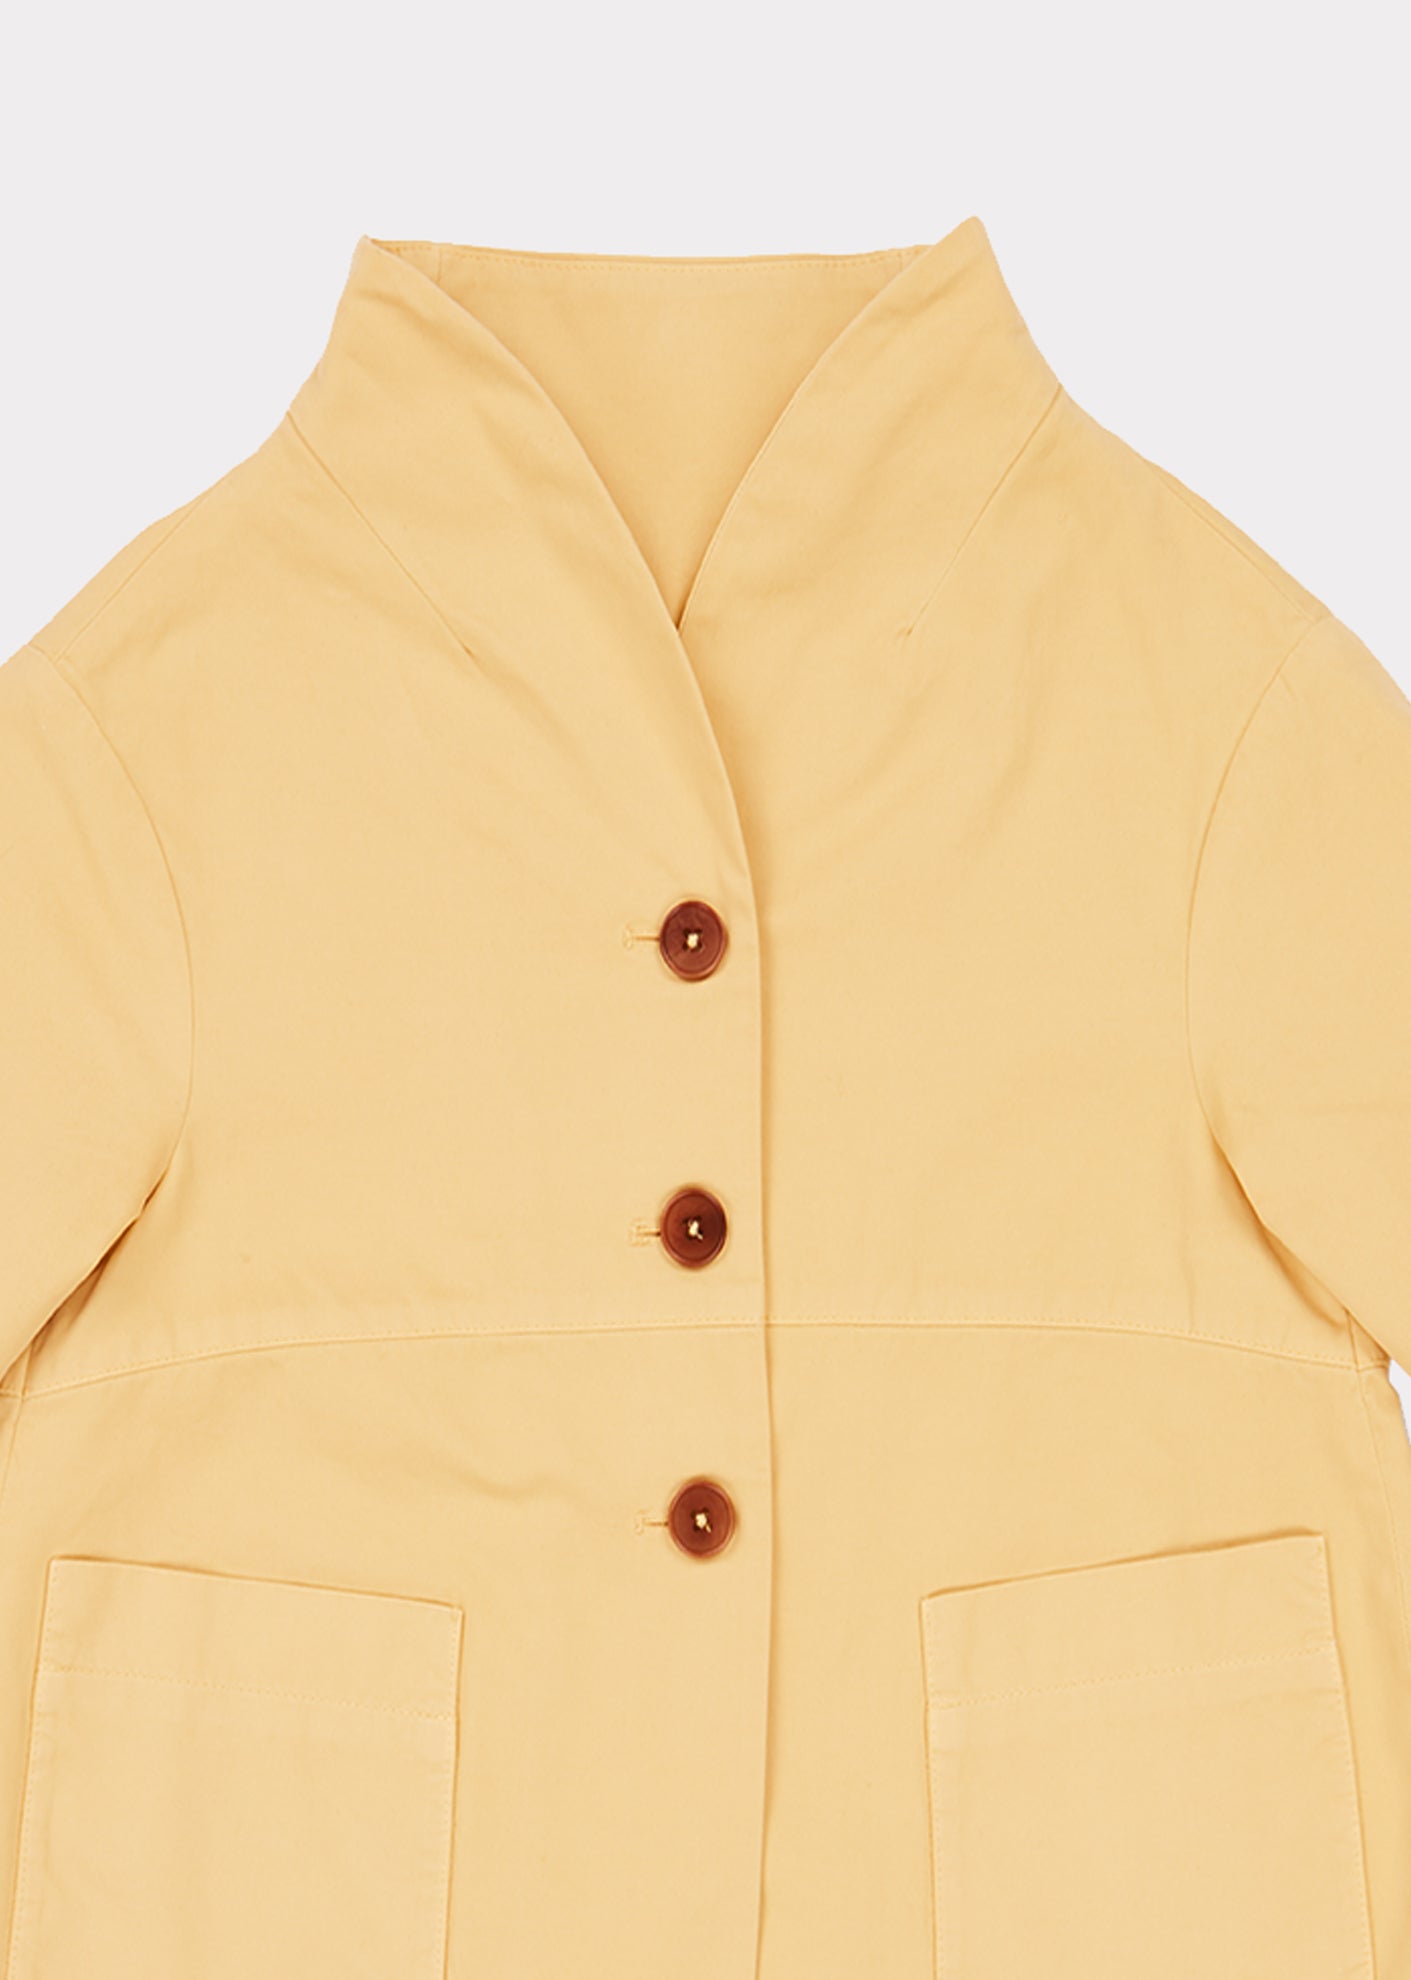 Girls Yellow Coat